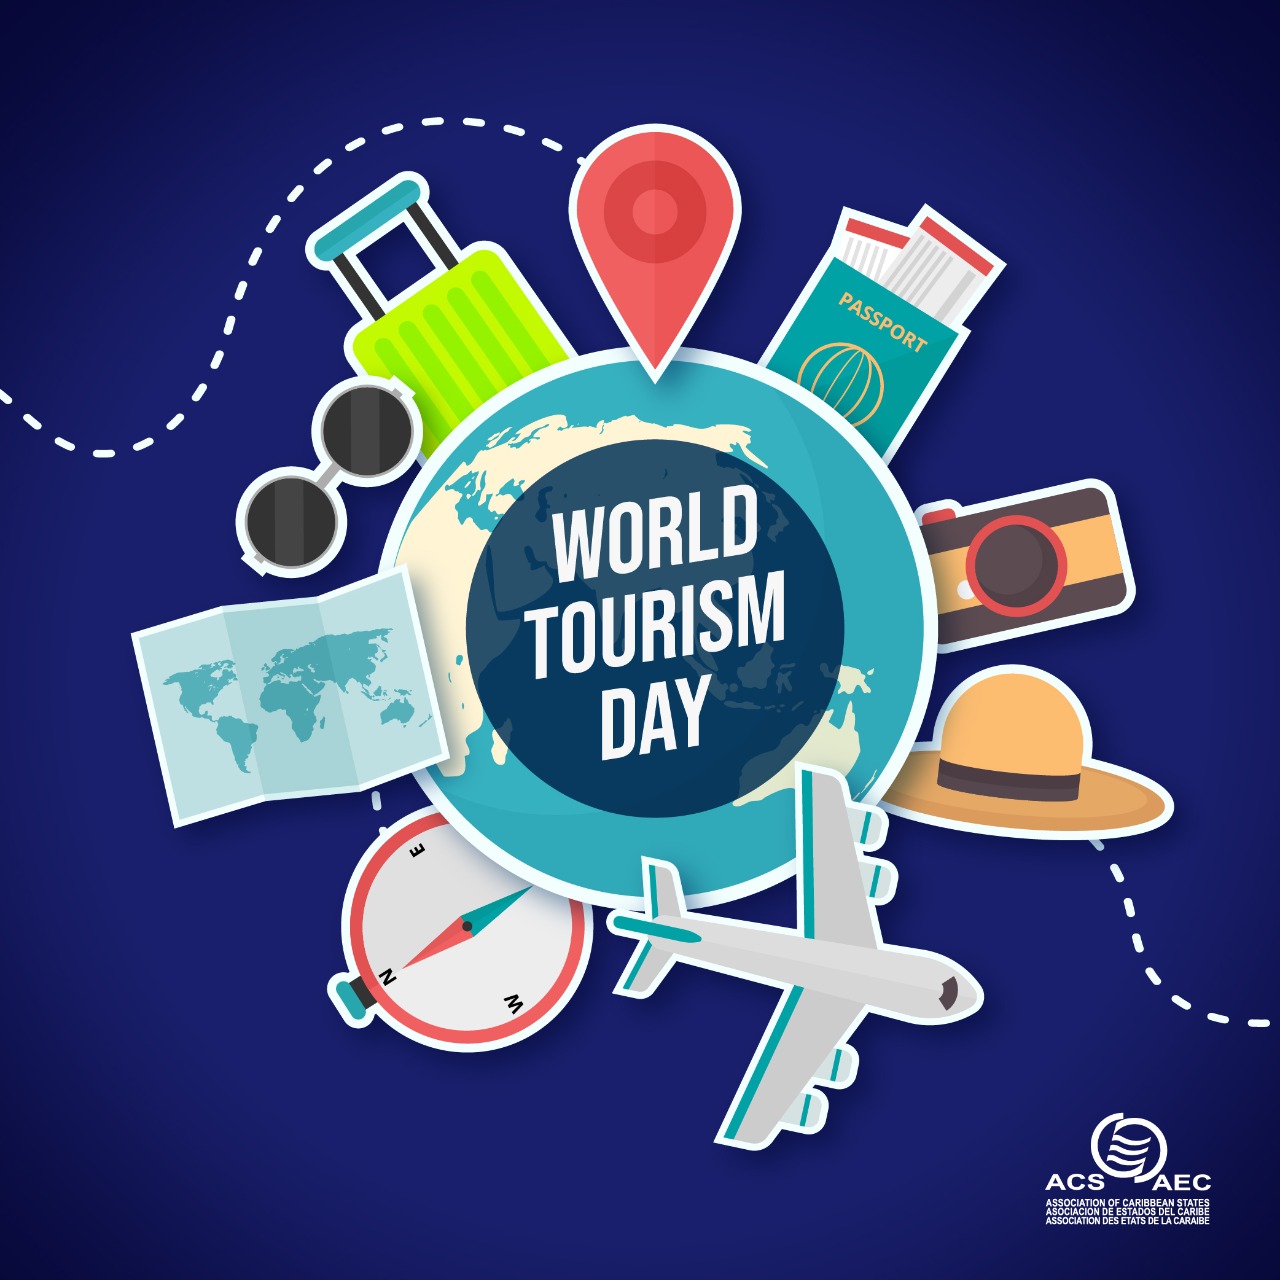 ACS Celebrates World Tourism Day ACSAEC